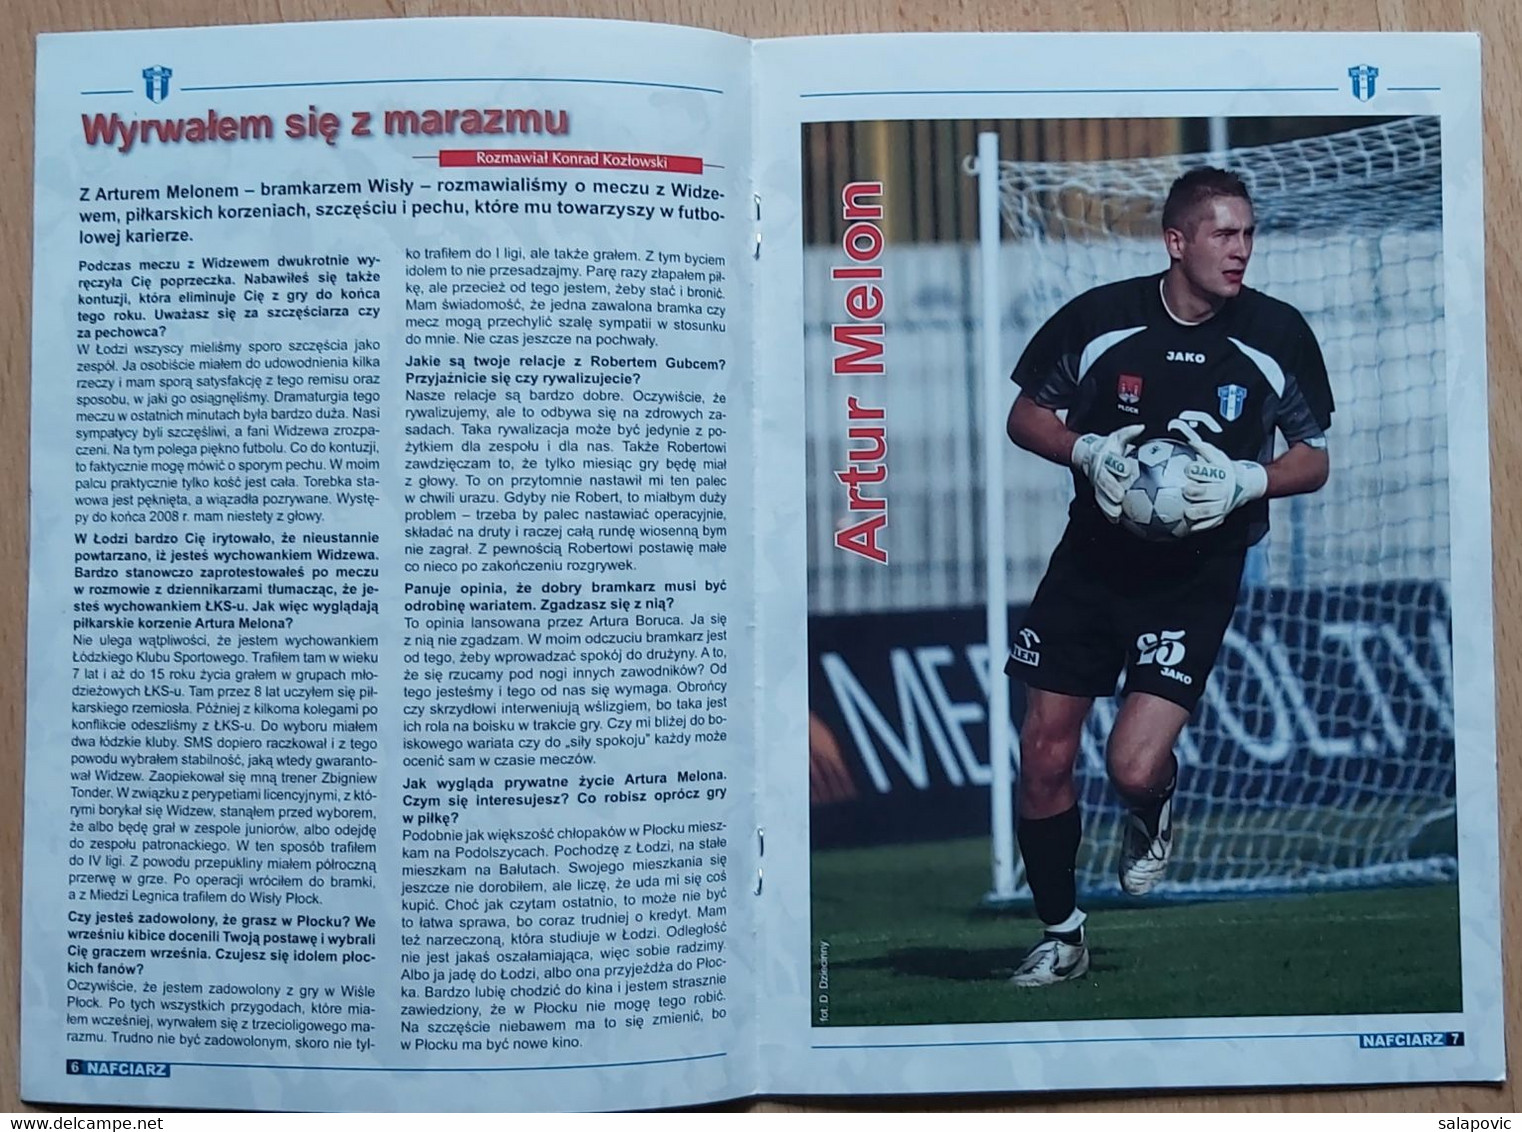 Nafciarz (oficjalna Gazeta Wisły Płock) Nr 22 - The Official Newspaper Of Wisła Płock Wiosna 2008 Football Match Program - Bücher